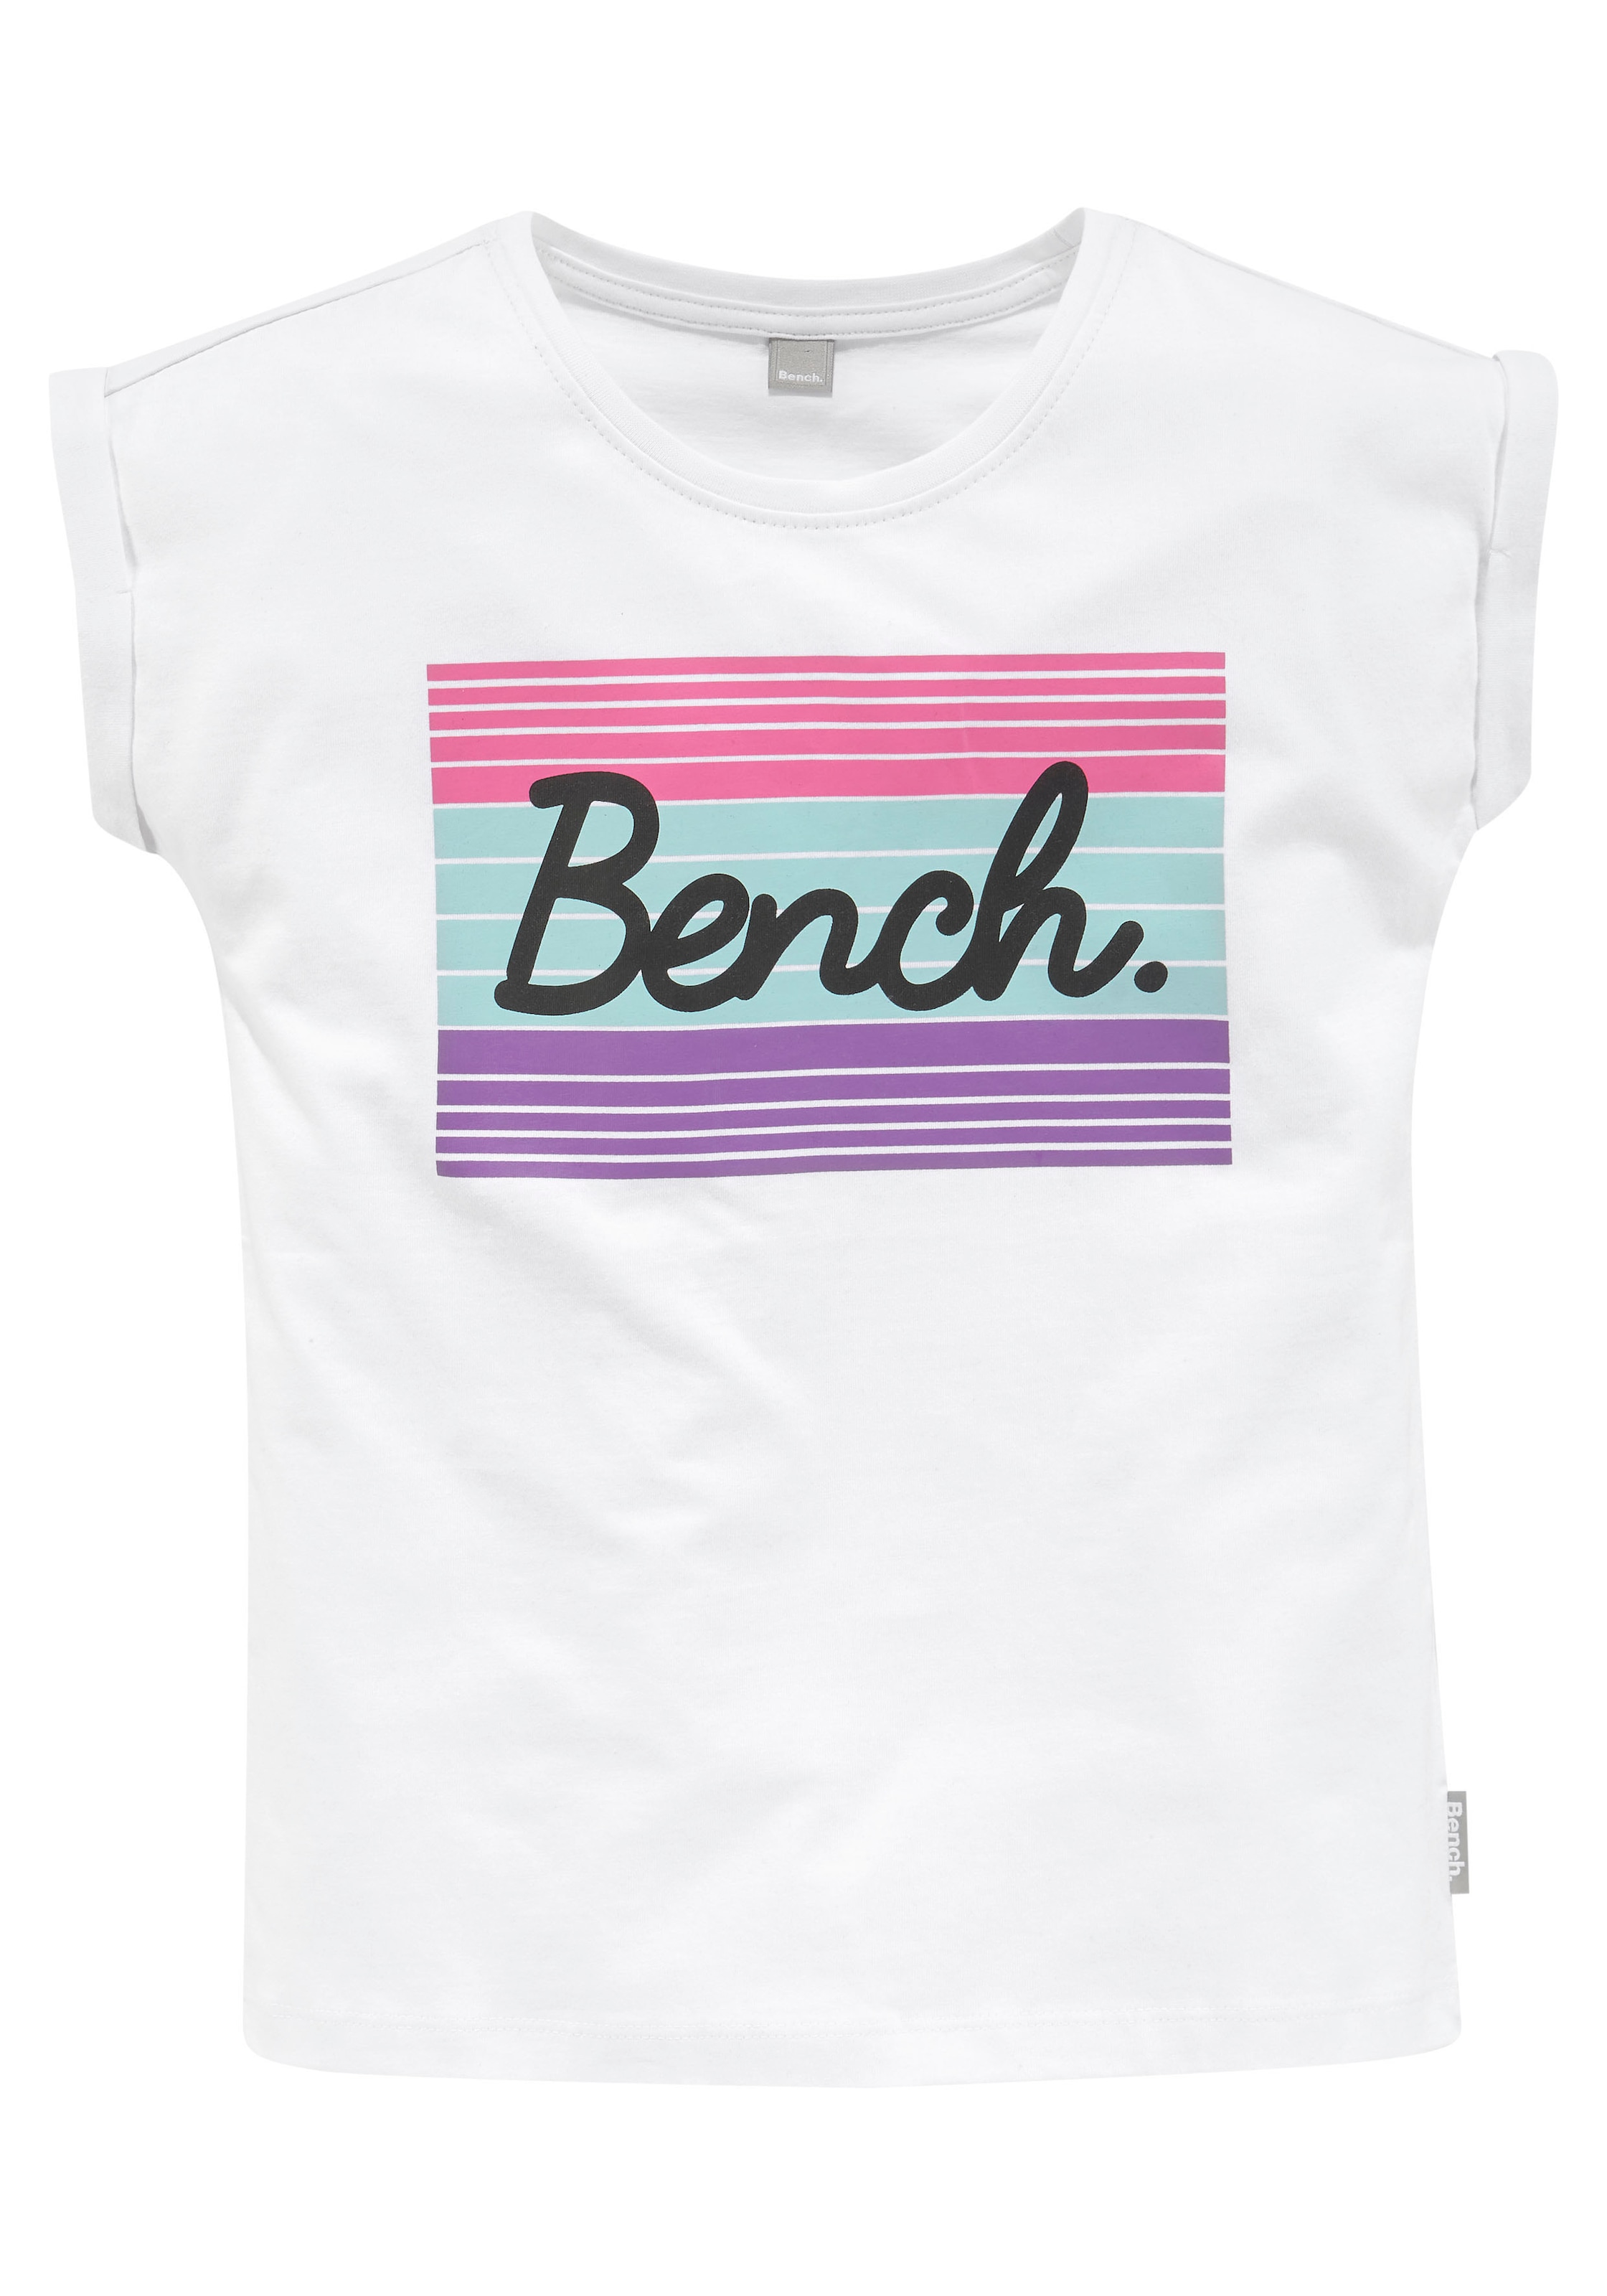 großem | für Bench. T-Shirt, ▷ Logodruck mit BAUR